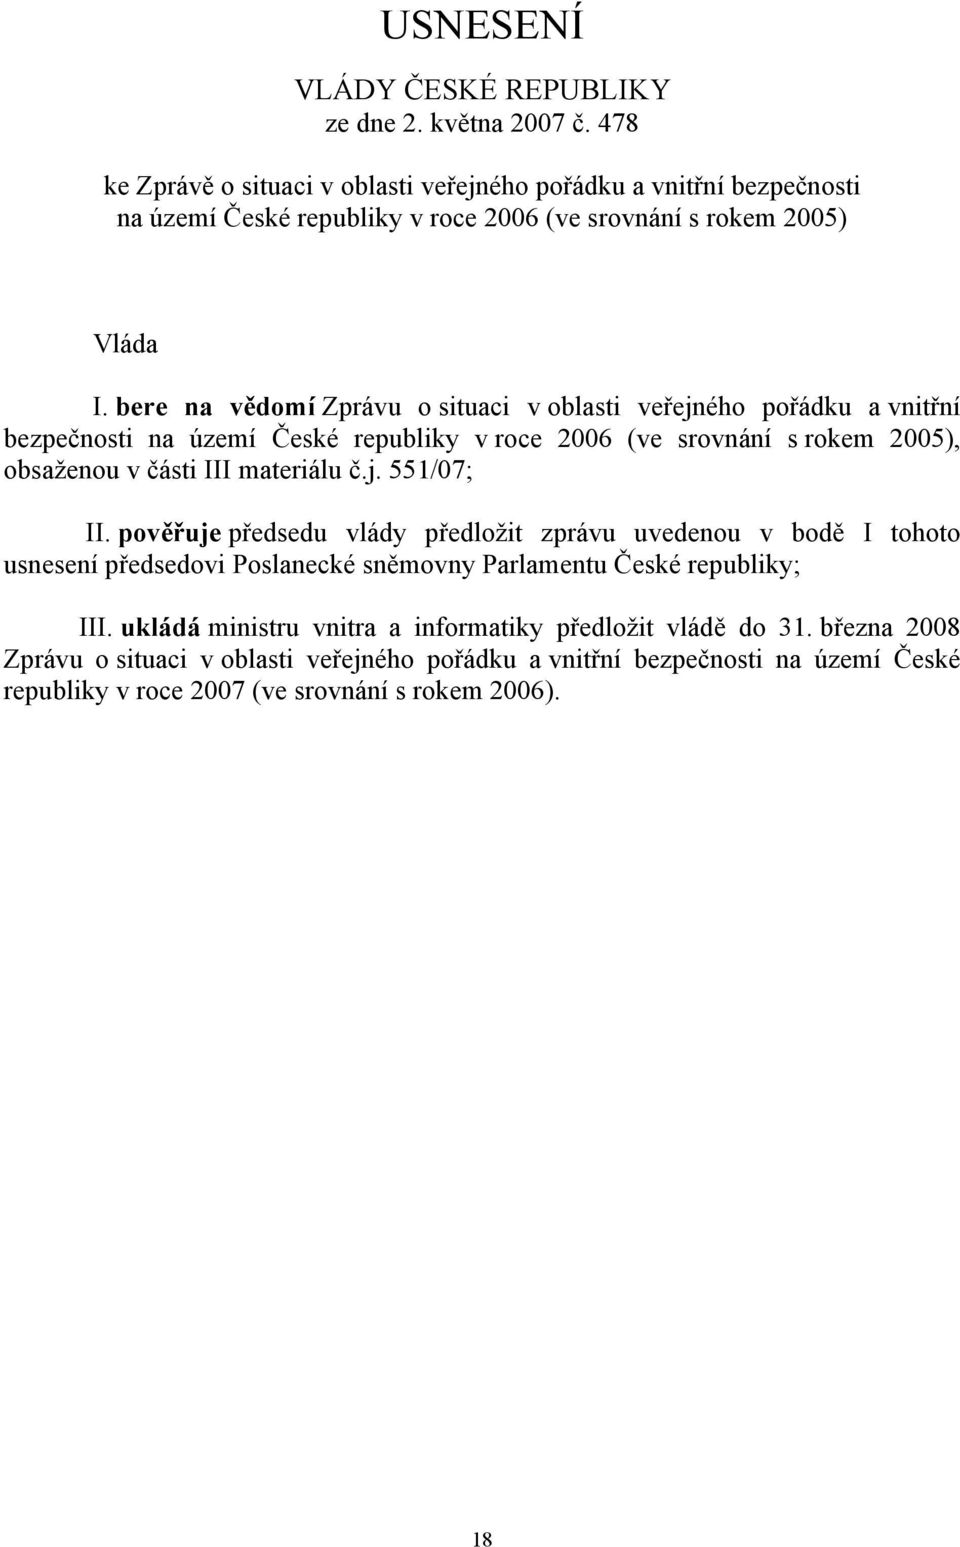 bere na vědomí Zprávu o situaci v oblasti veřejného pořádku a vnitřní bezpečnosti na území České republiky v roce 2006 (ve srovnání s rokem 2005), obsaženou v části III materiálu č.j. 551/07; II.